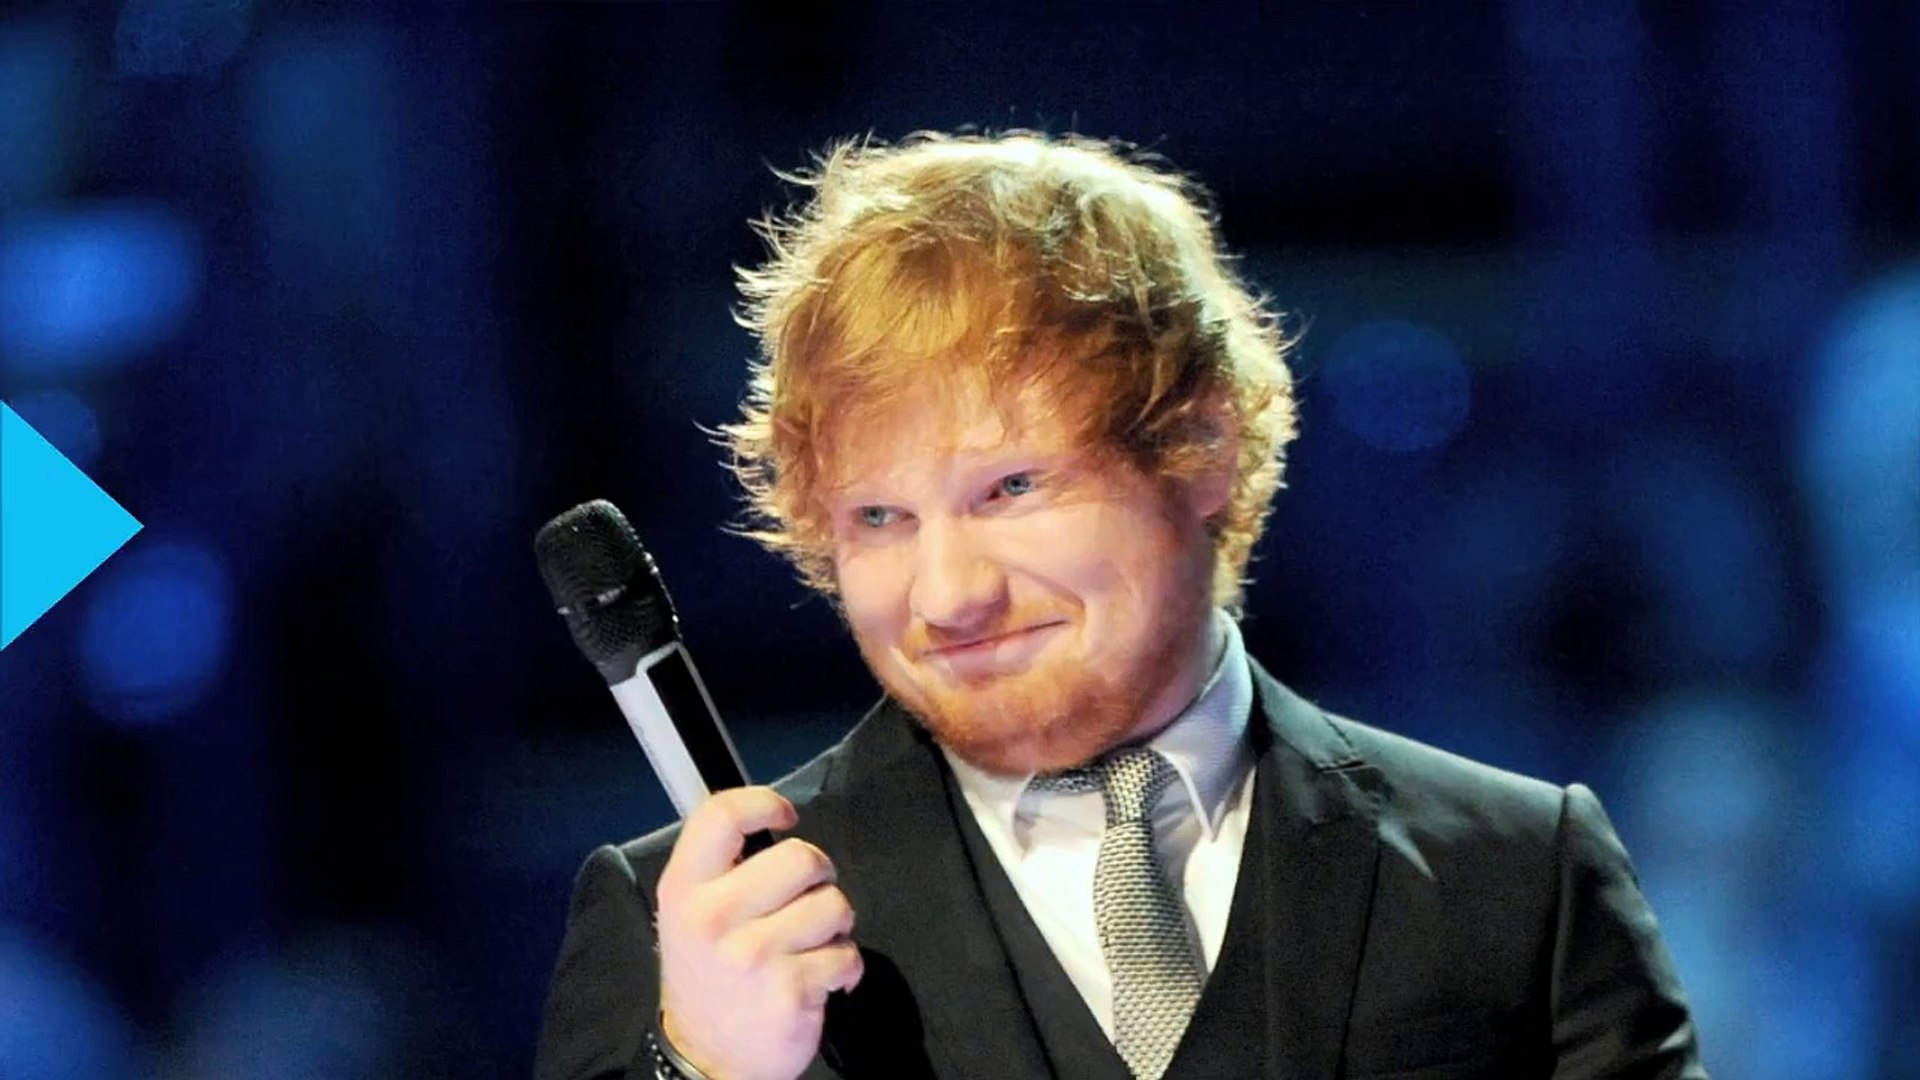 Ed Sheeran Has Given Up Smoking